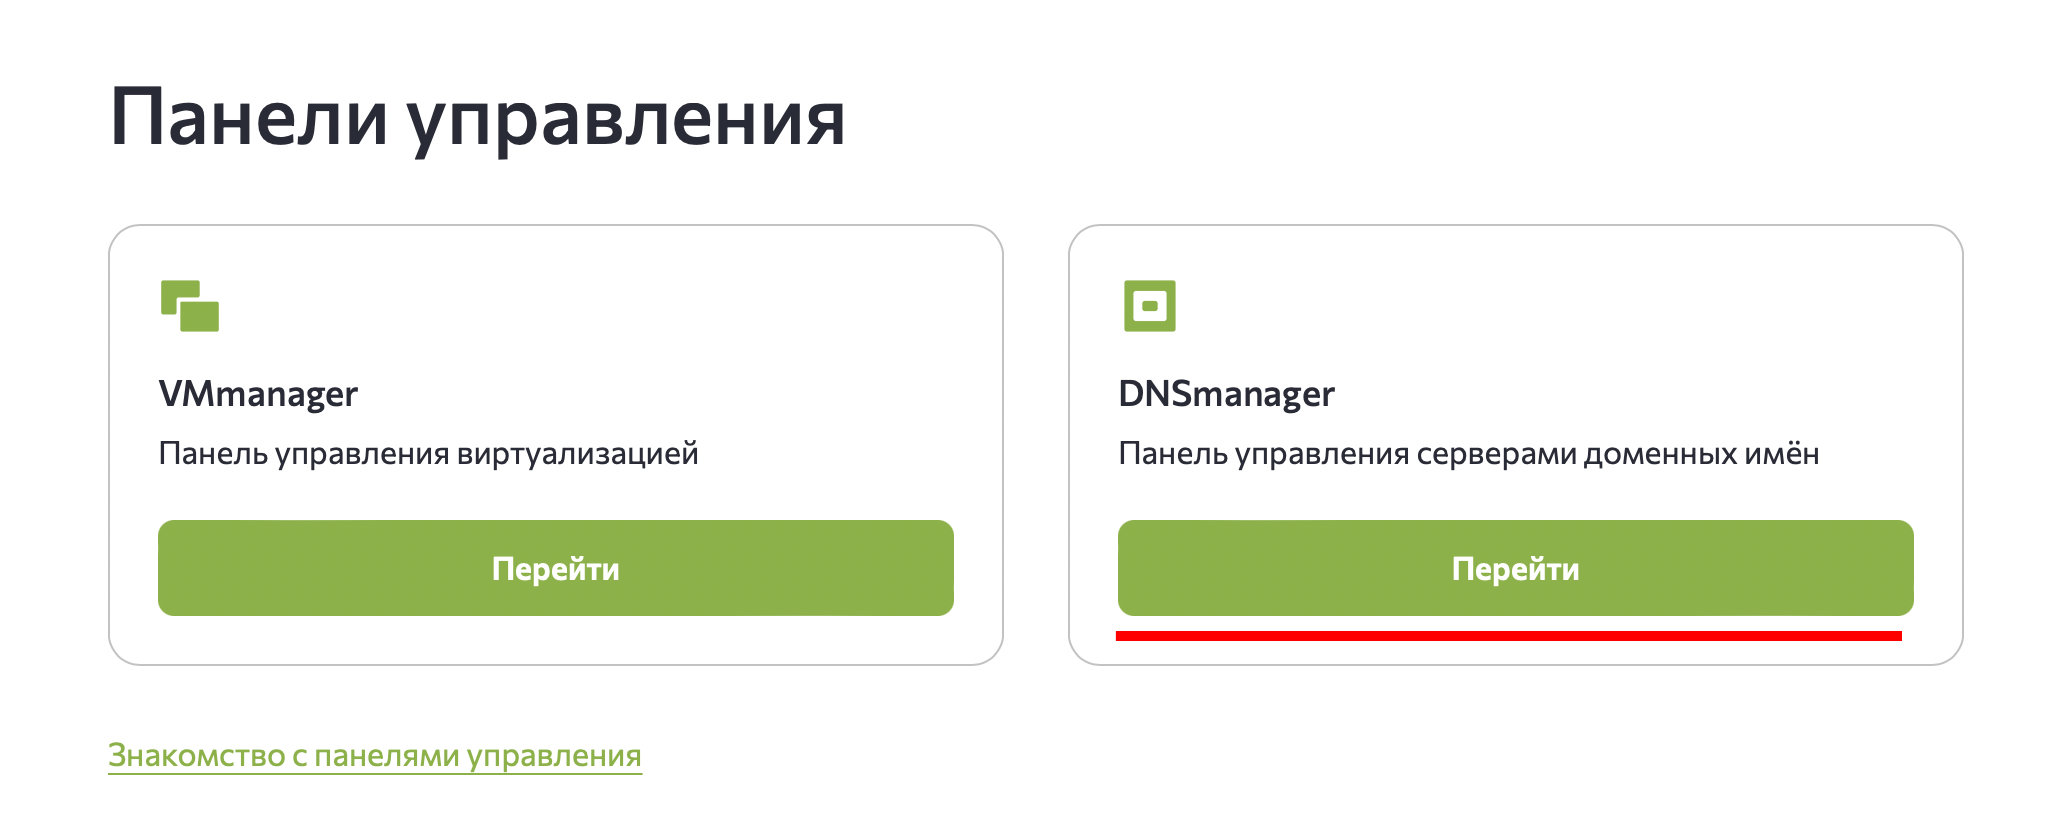 Панель управления серверами доменных имён